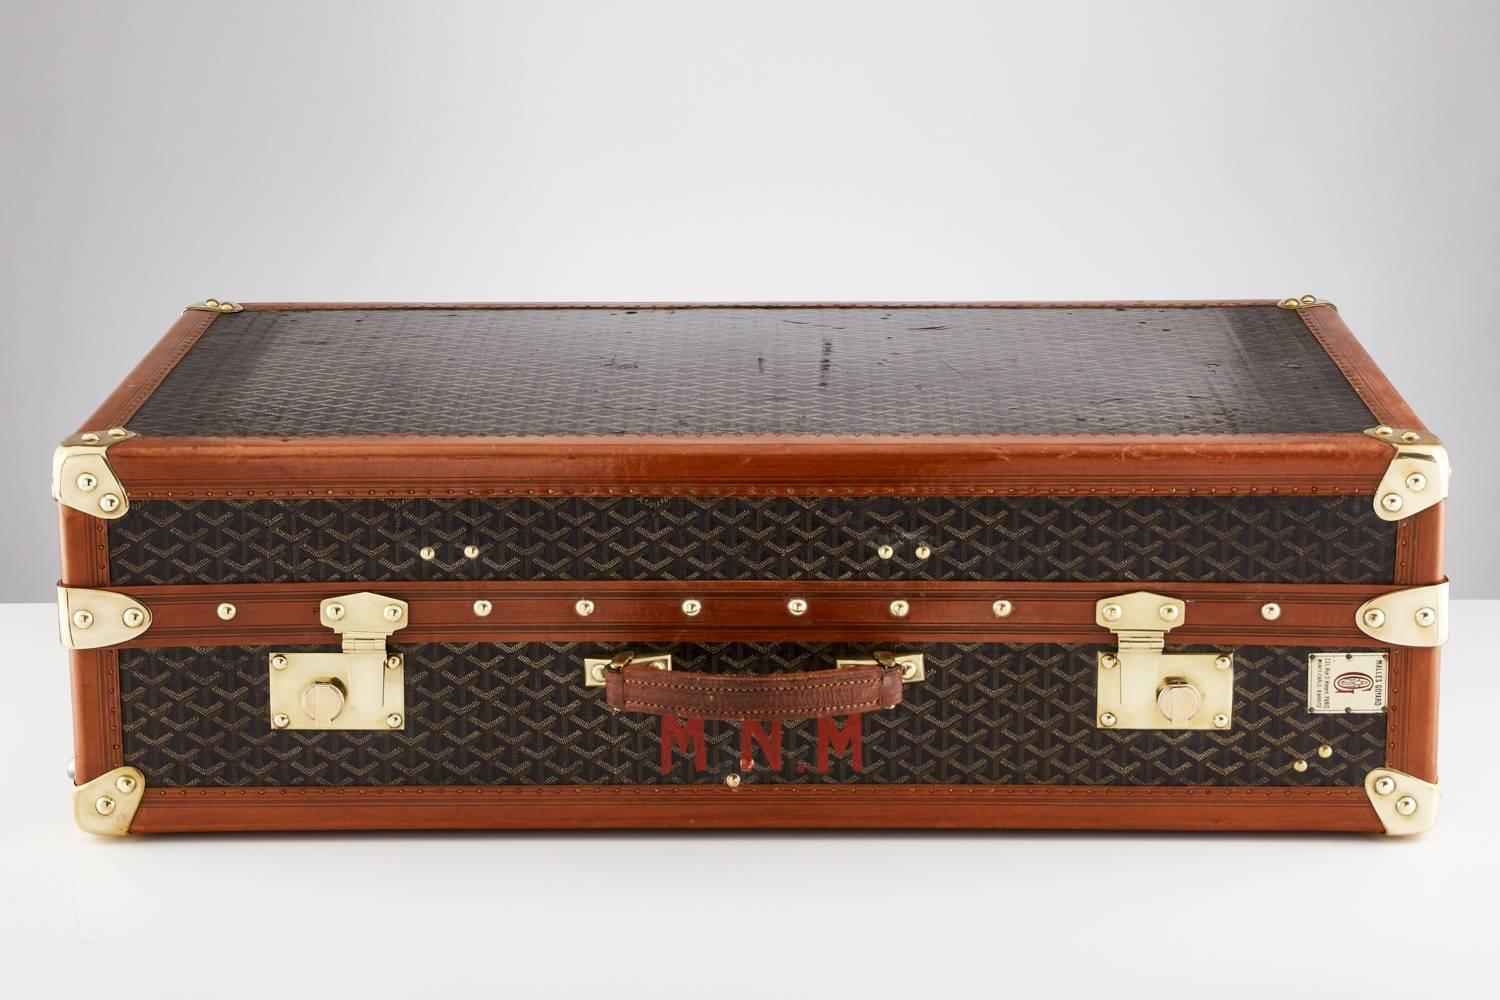 Une malle-armoire Goyard du 20e siècle, vers 1930-1935.
Ce magnifique bagage est signé de bout en bout. 
La quincaillerie, en particulier les serrures, est d'une qualité exceptionnelle. 
L'intérieur comporte des tiroirs, avec les mots Goyard brodés